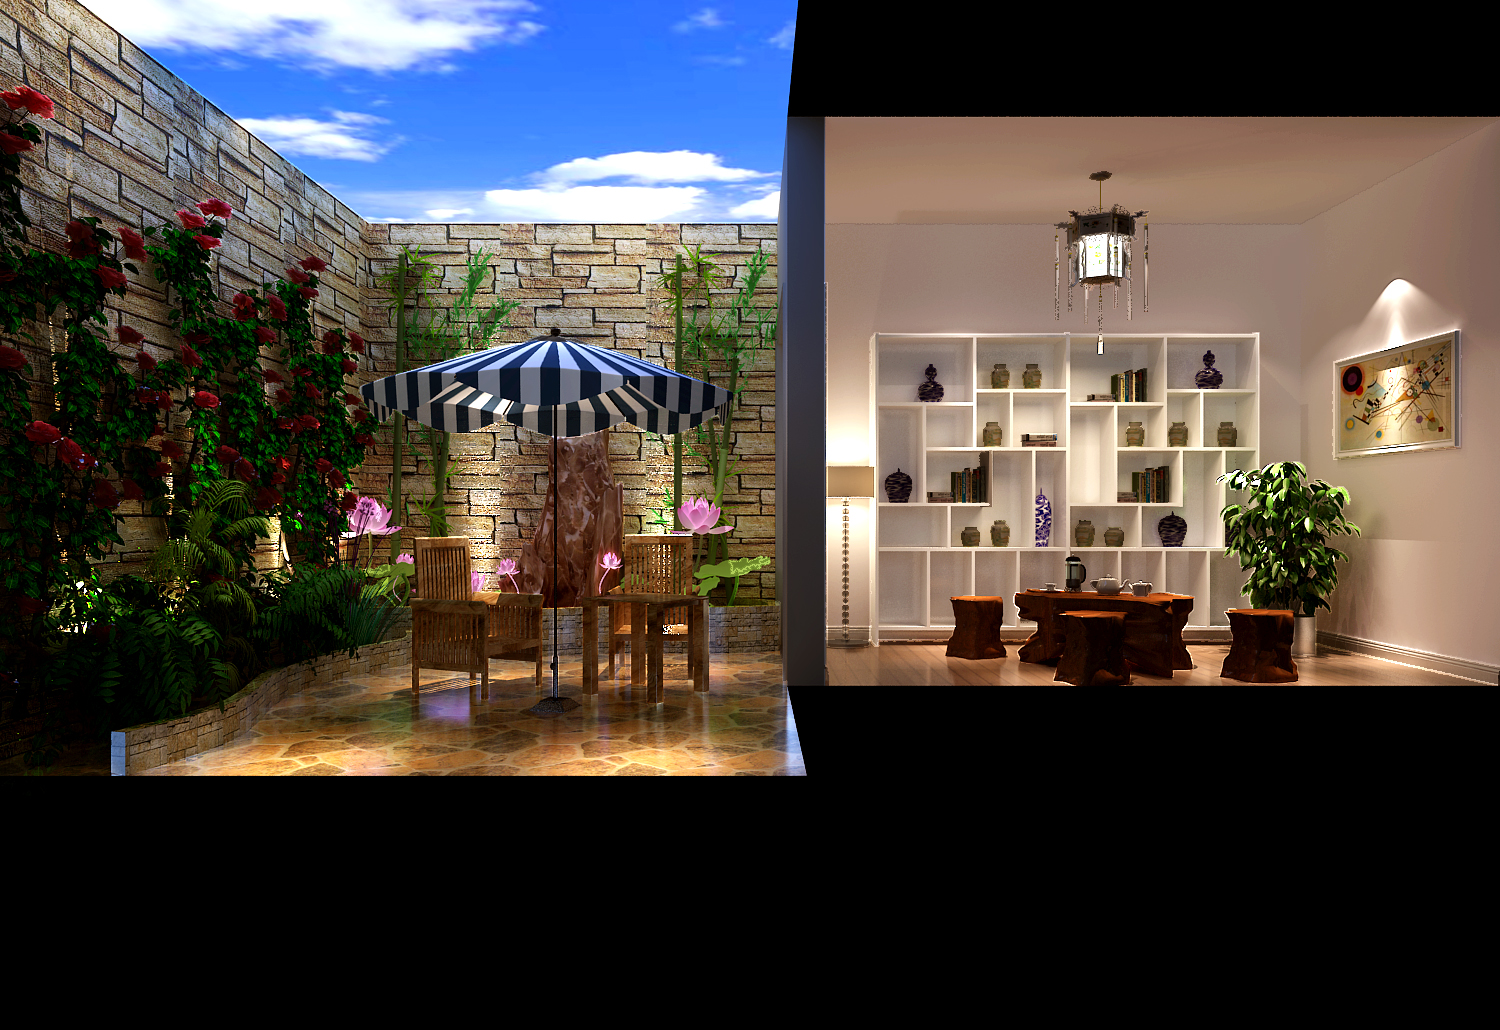 一层带地下 公寓 现代 简约 阳台图片来自高度国际装饰宋增会在K2-百合湾 140平米现代简约的分享